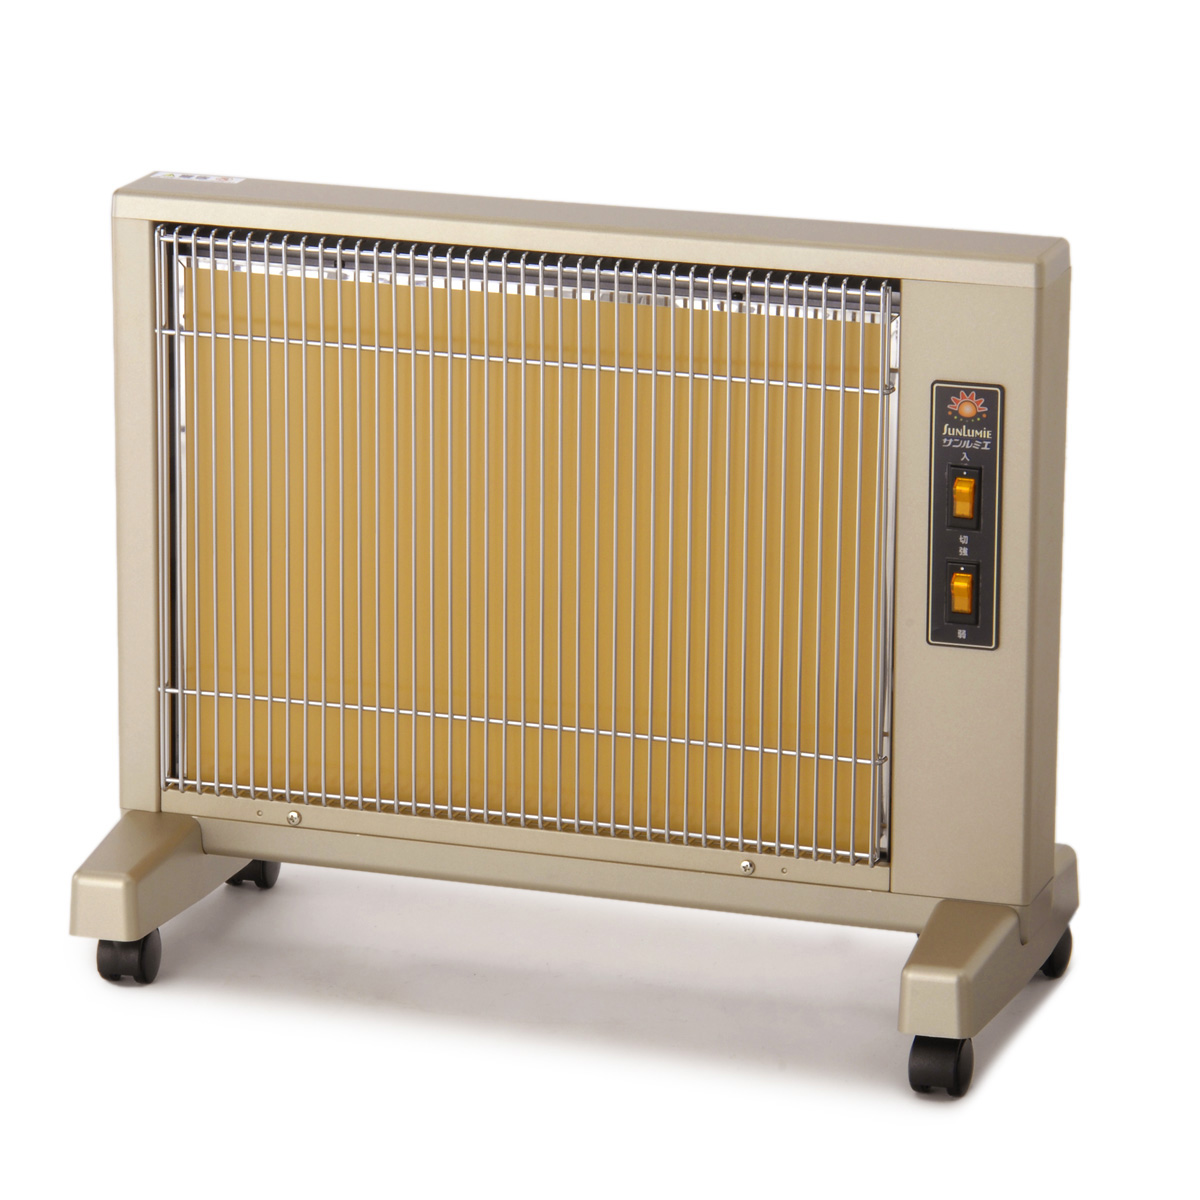 遠赤外線暖房器サンルミエ キュート 3年保証付 - QVC.jp